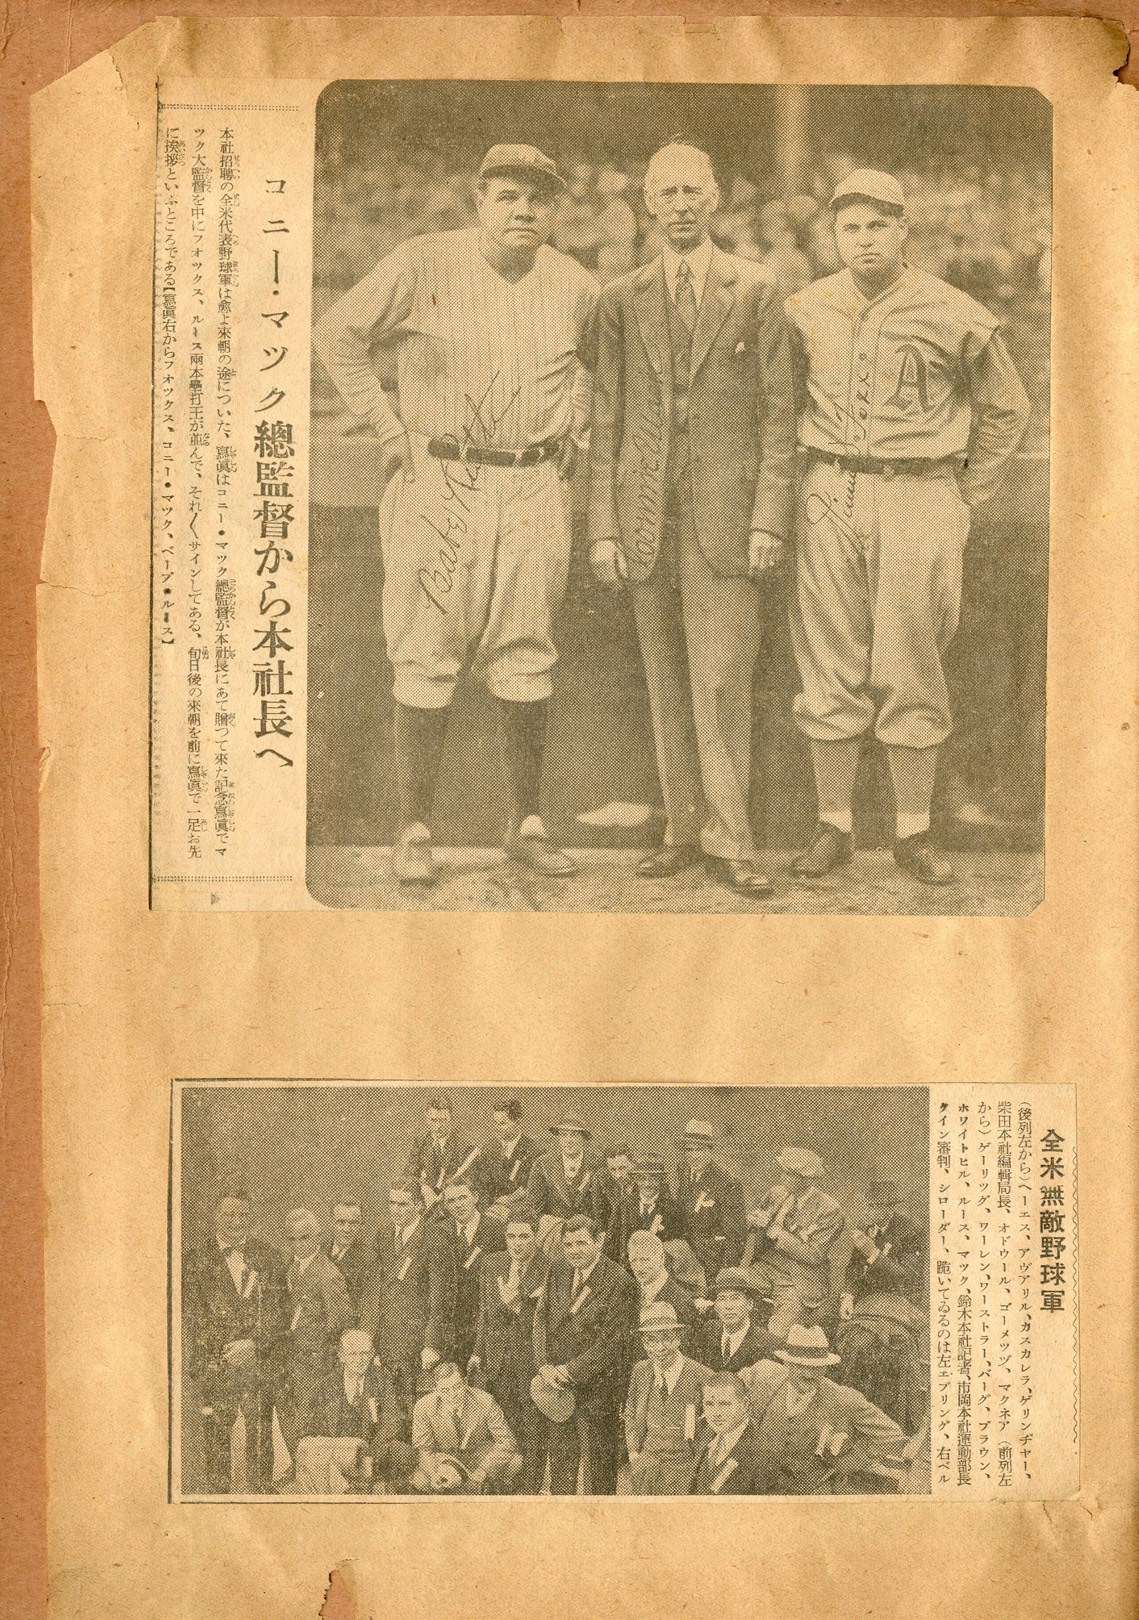 1934 Tour of Japan Scrapbook